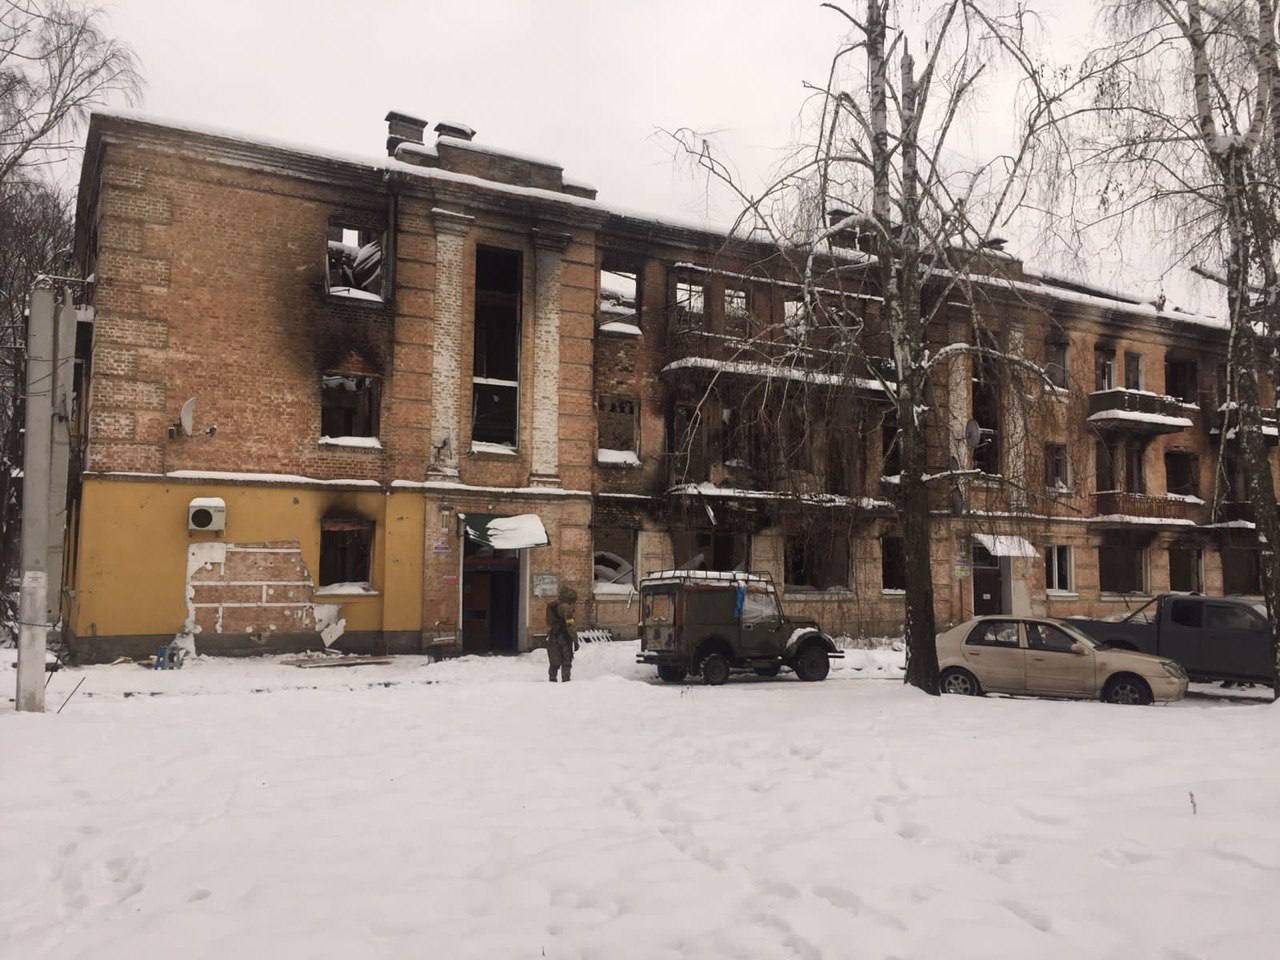 Дом, на котором была изображена женщина в противогазе, никем не охранялся и разрушался от непогоды. Фото: t.me/andrii_nebytov